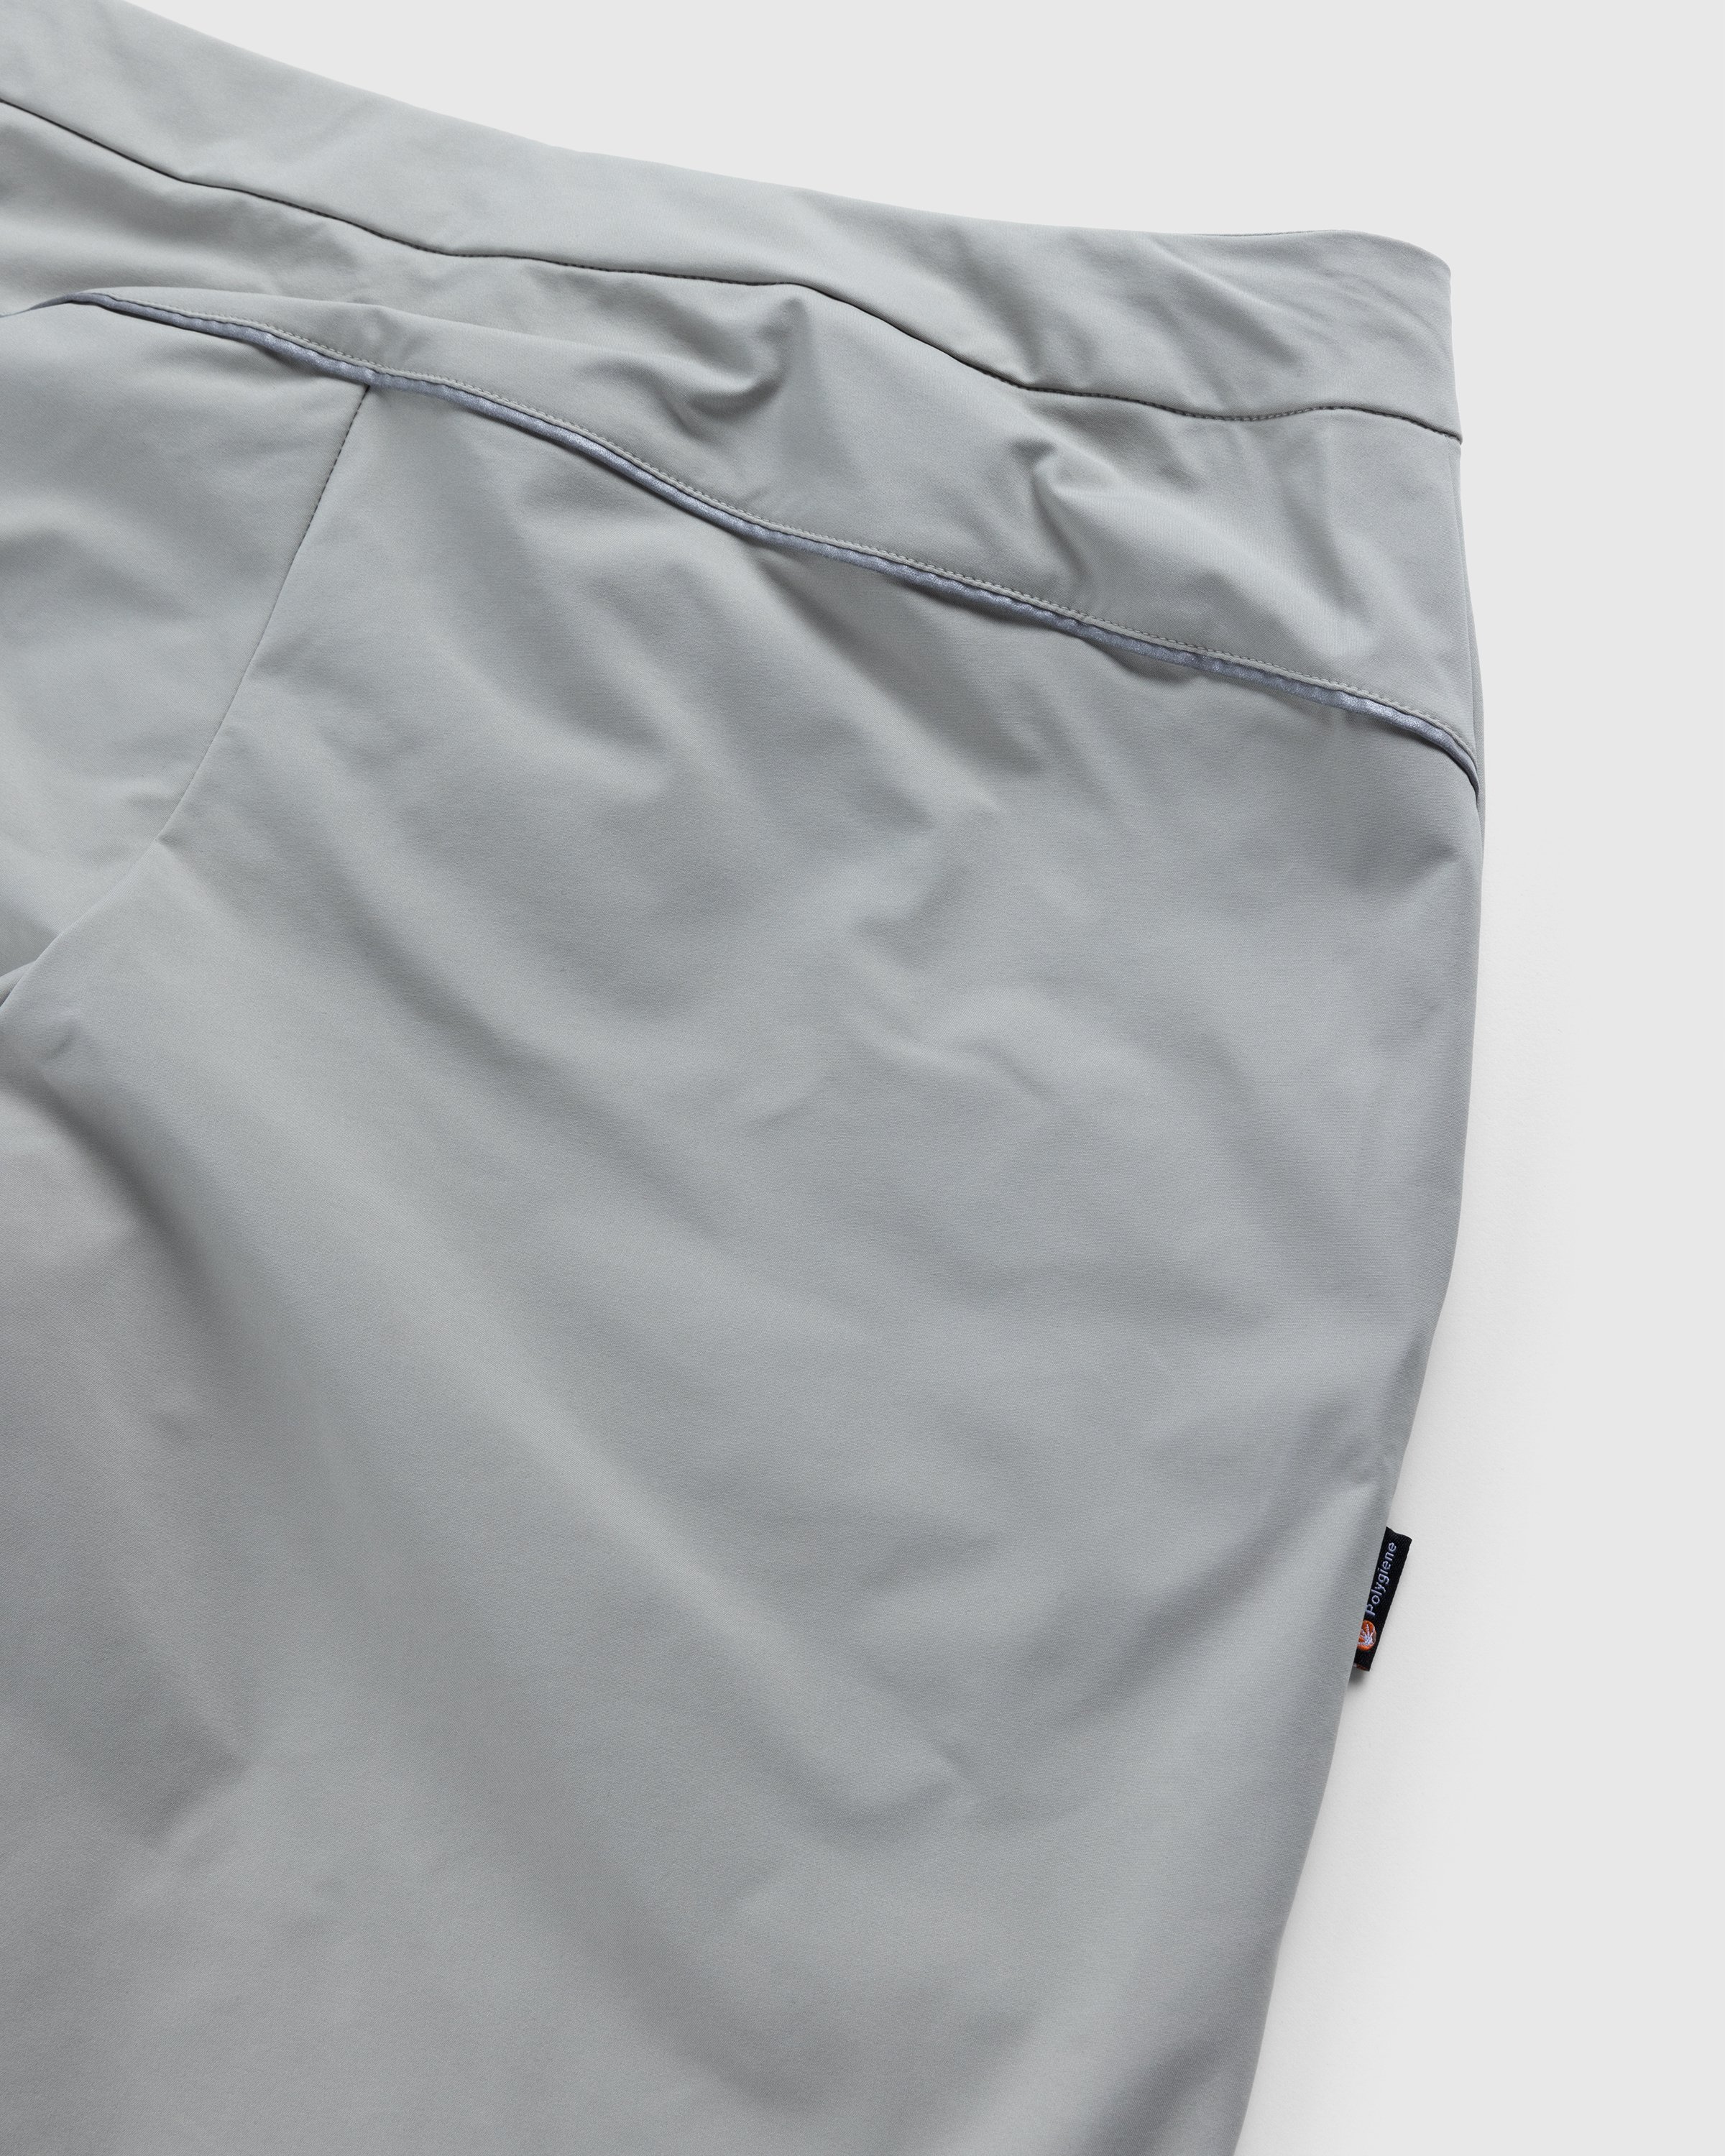 Adidas - Voyager Shorts Feather Grey/Savanna - Clothing - Beige - Image 3